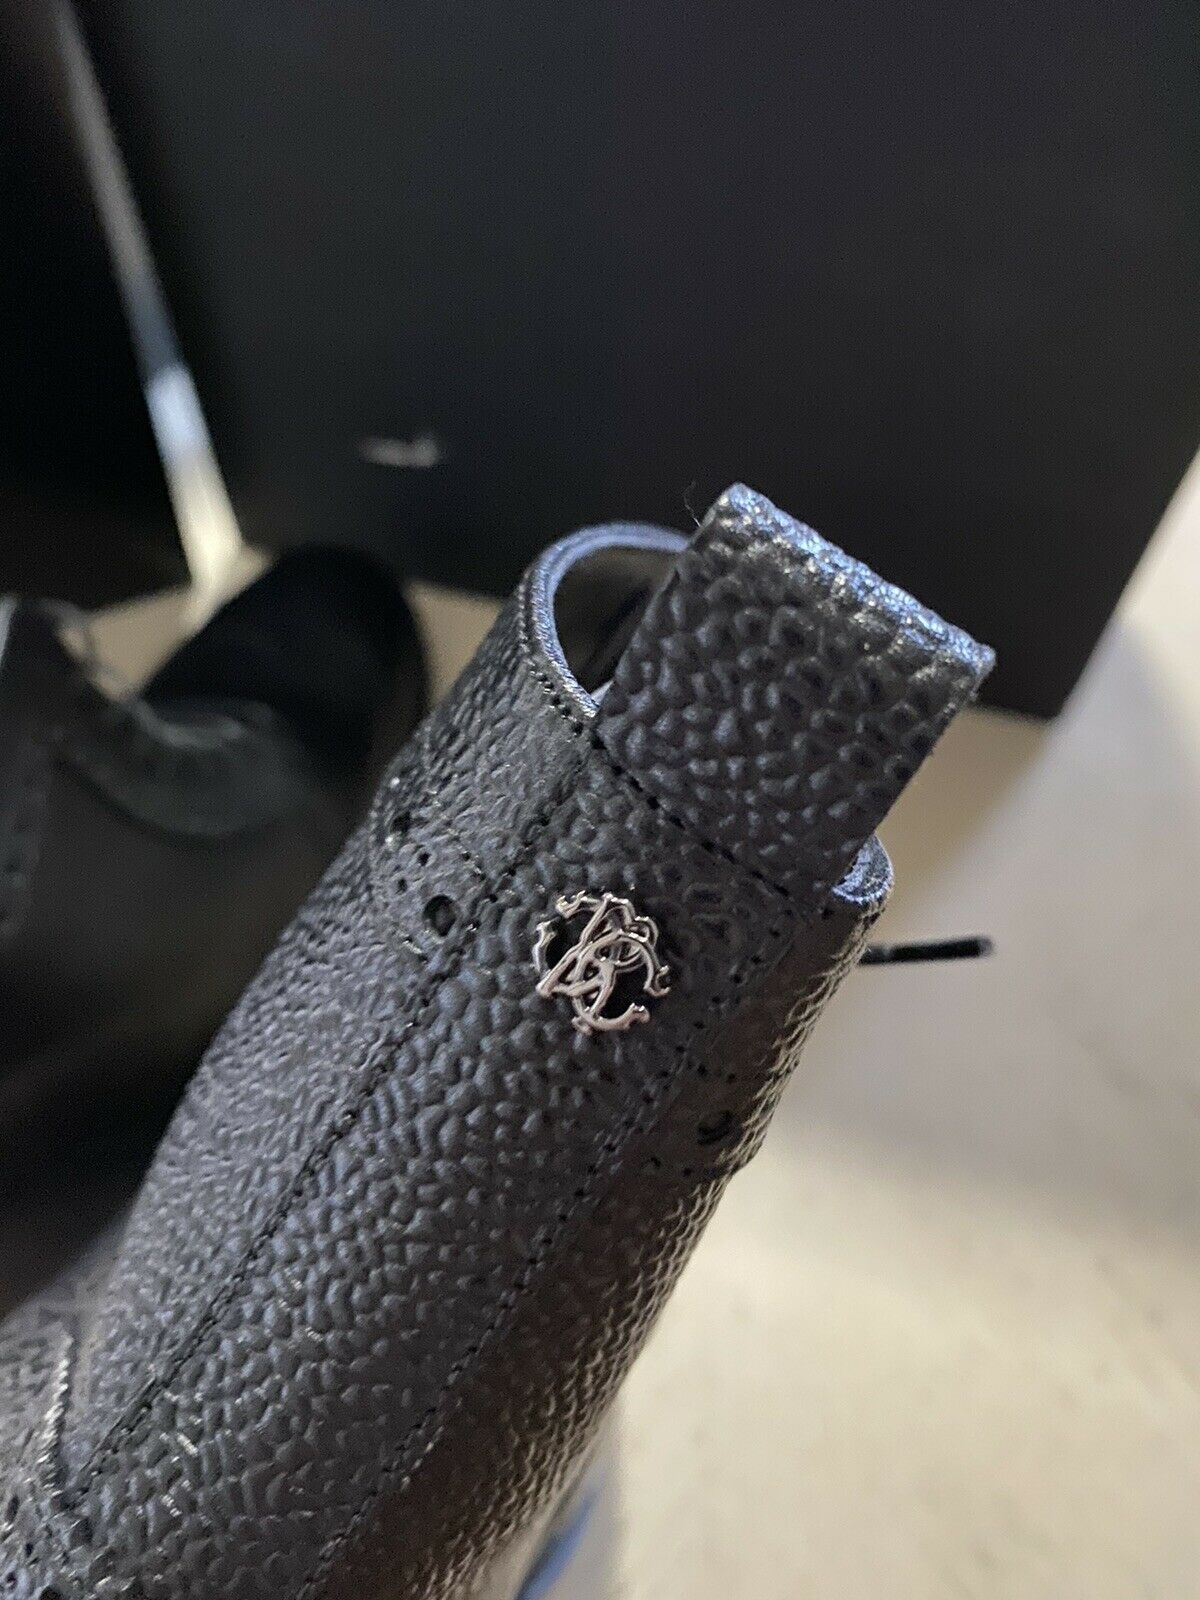 Новые мужские кожаные ботинки Roberto Cavalli за 720 долларов, черные 12 US/45 EU Италия 